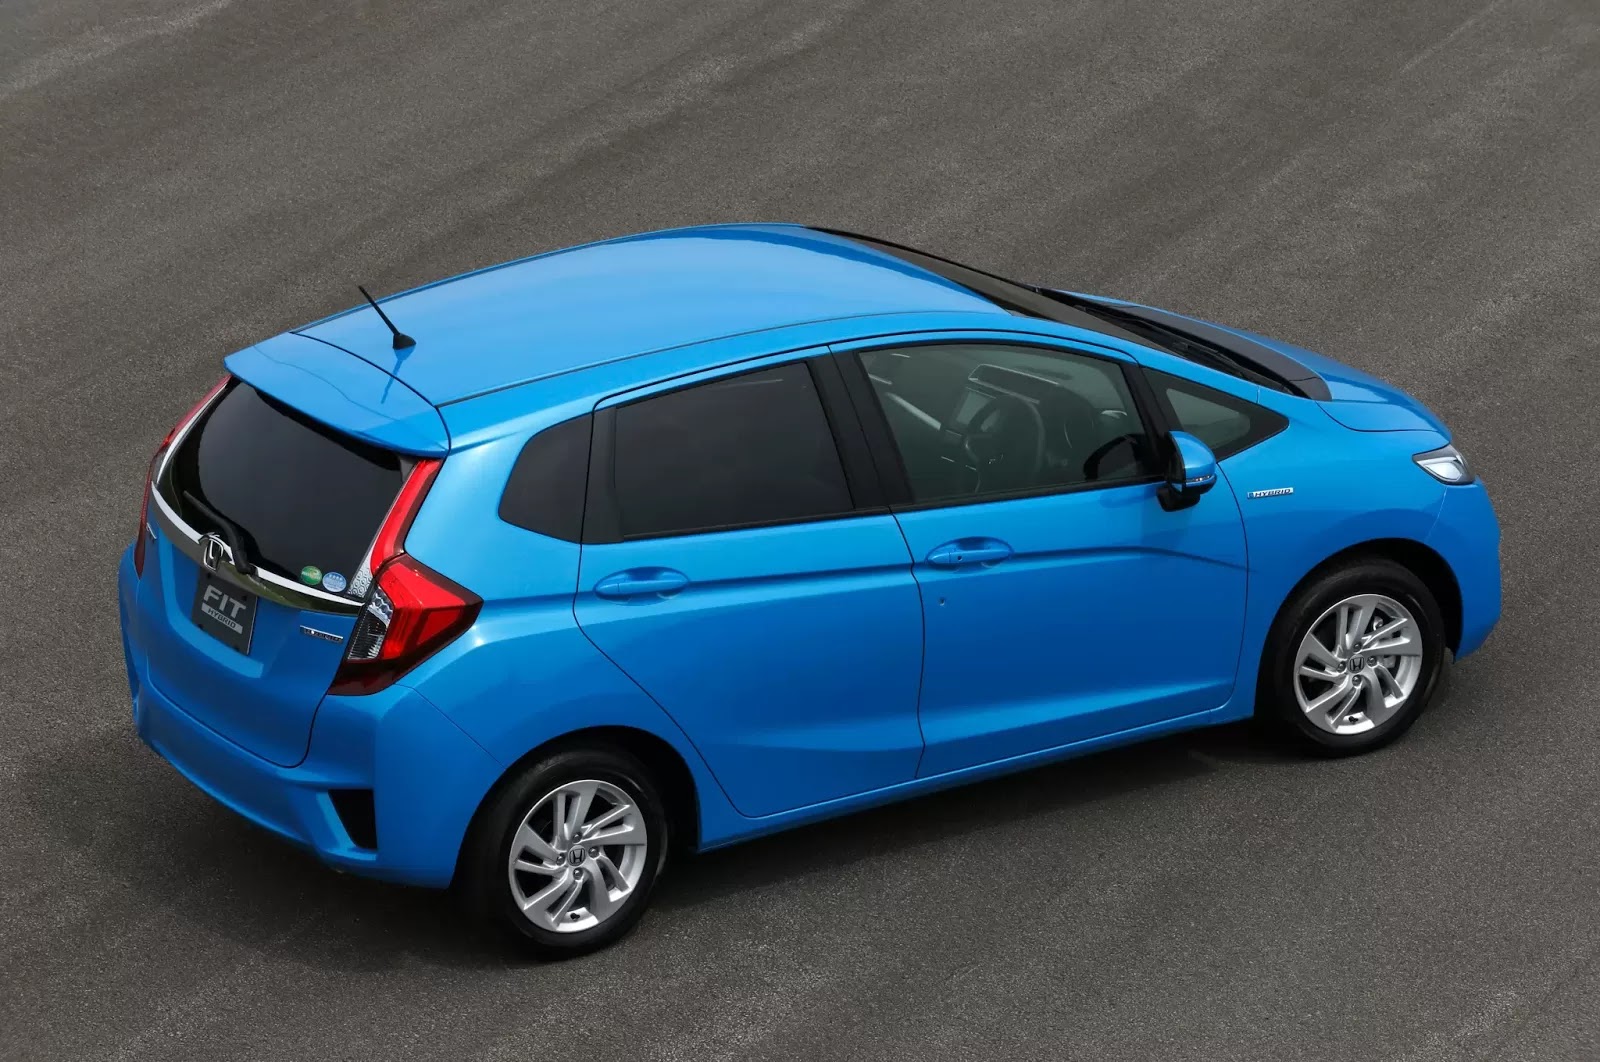  Gambar  Mobil  Honda  Warna  Biru  Modifikasi Mobil 